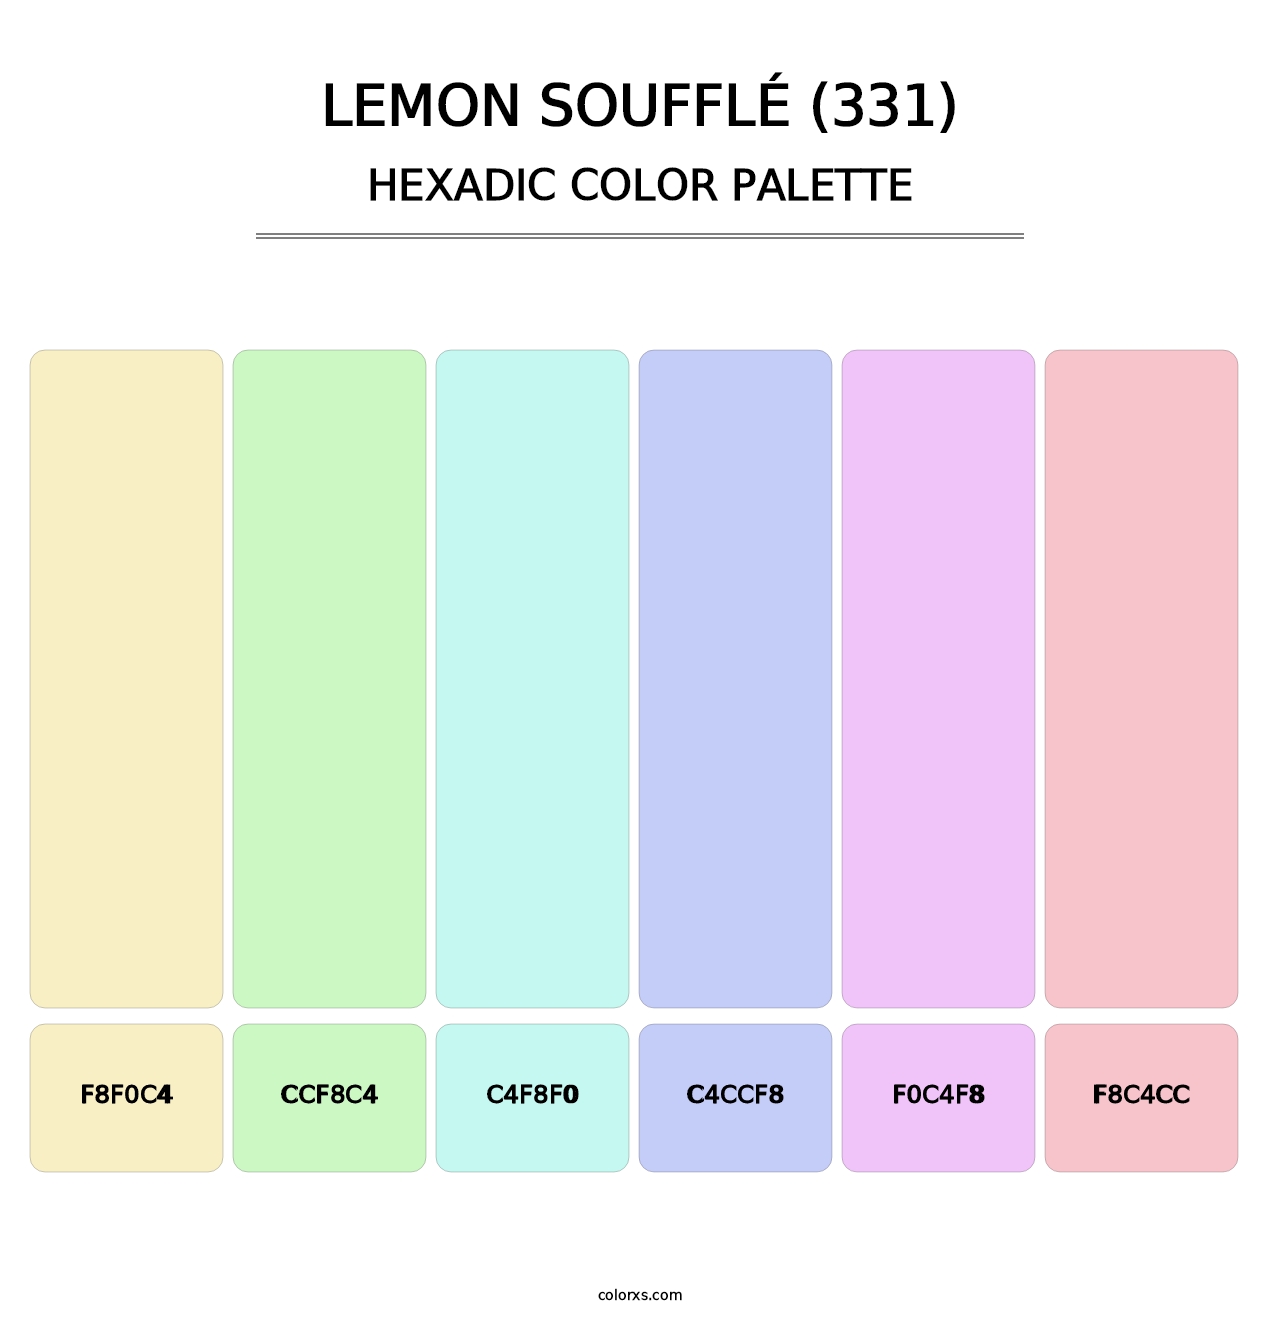 Lemon Soufflé (331) - Hexadic Color Palette